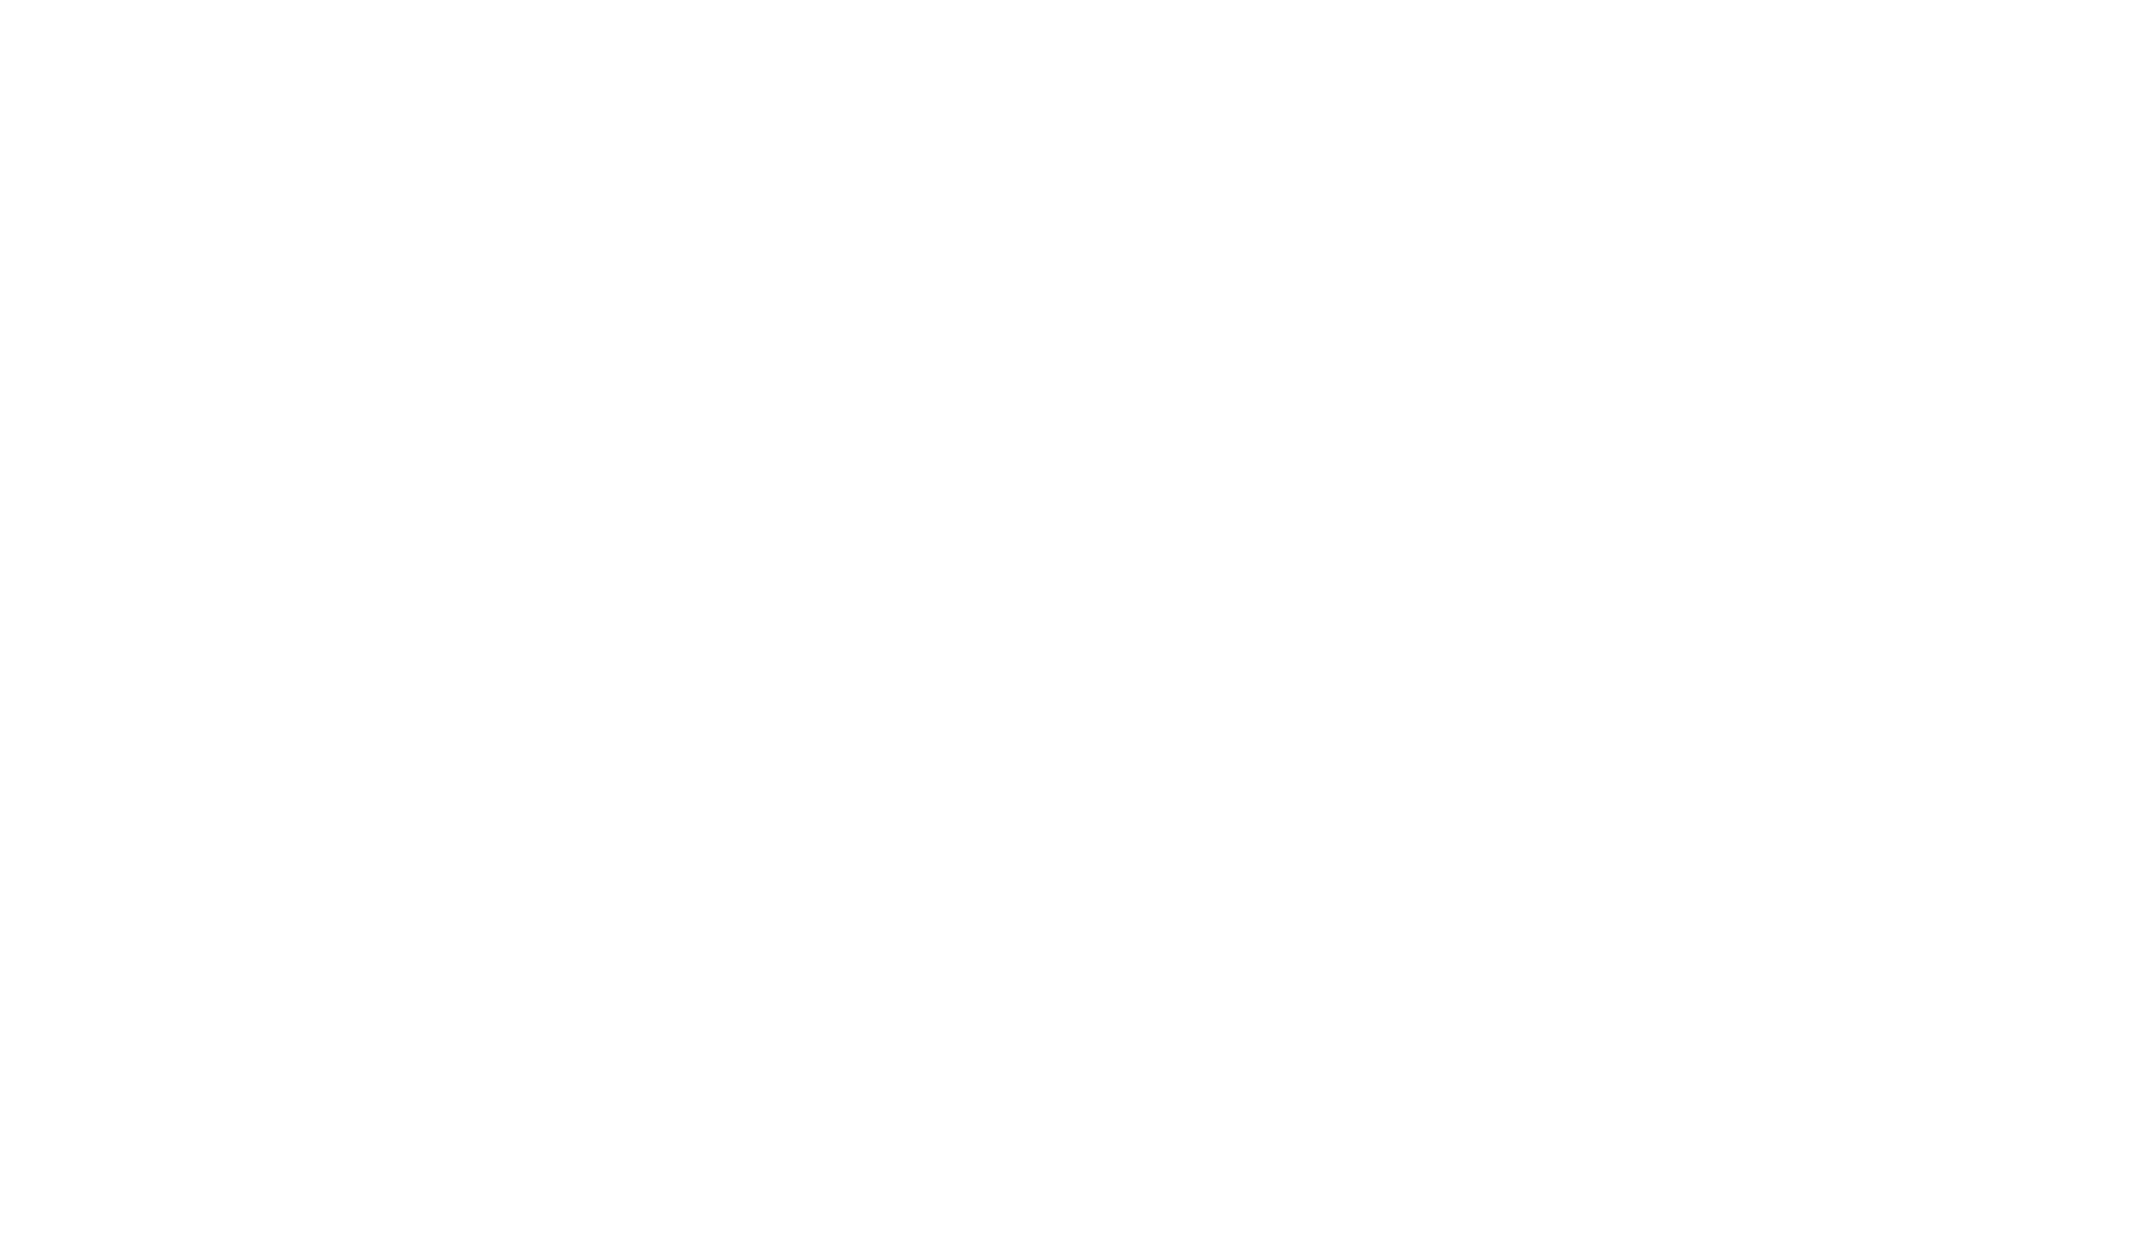 Porzio_LifeSciences_AnRLDatix_Logo_White